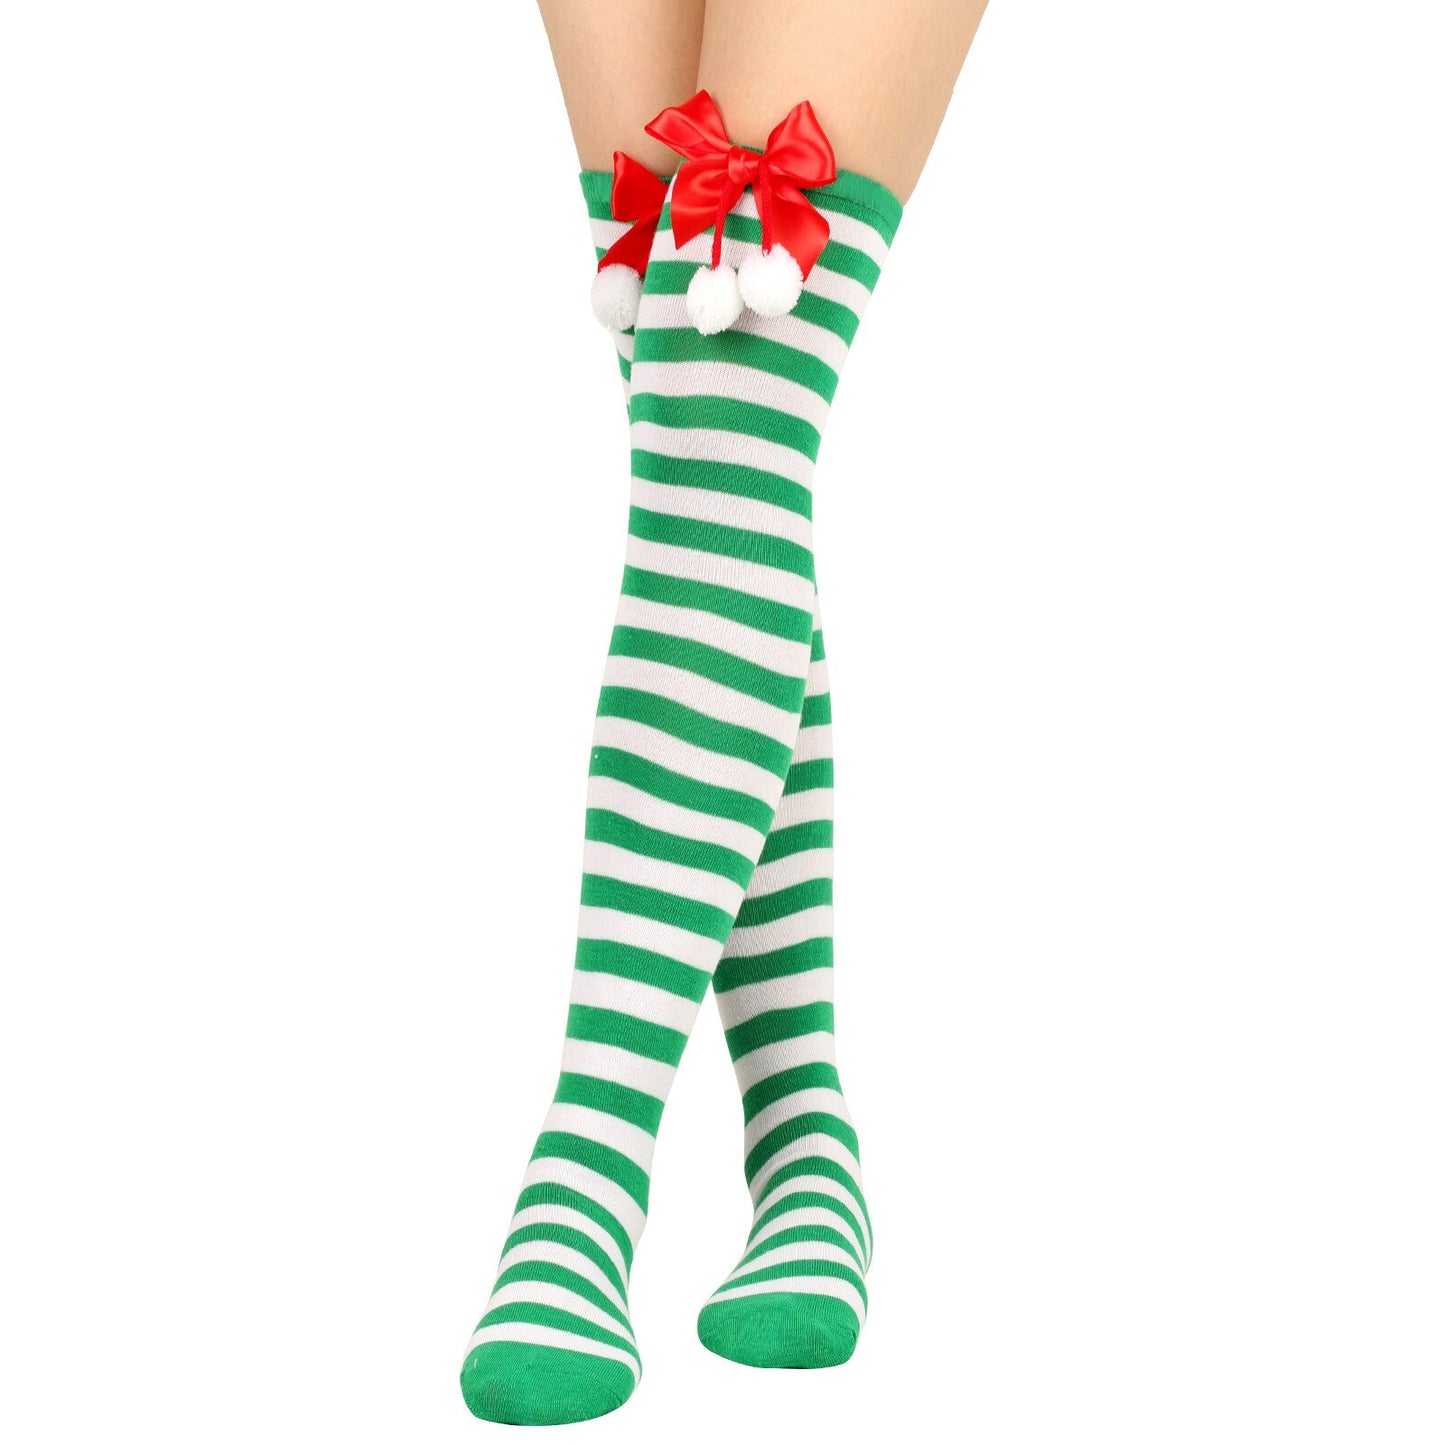 Sexy Black White Striped Long Socks Women Over Knee